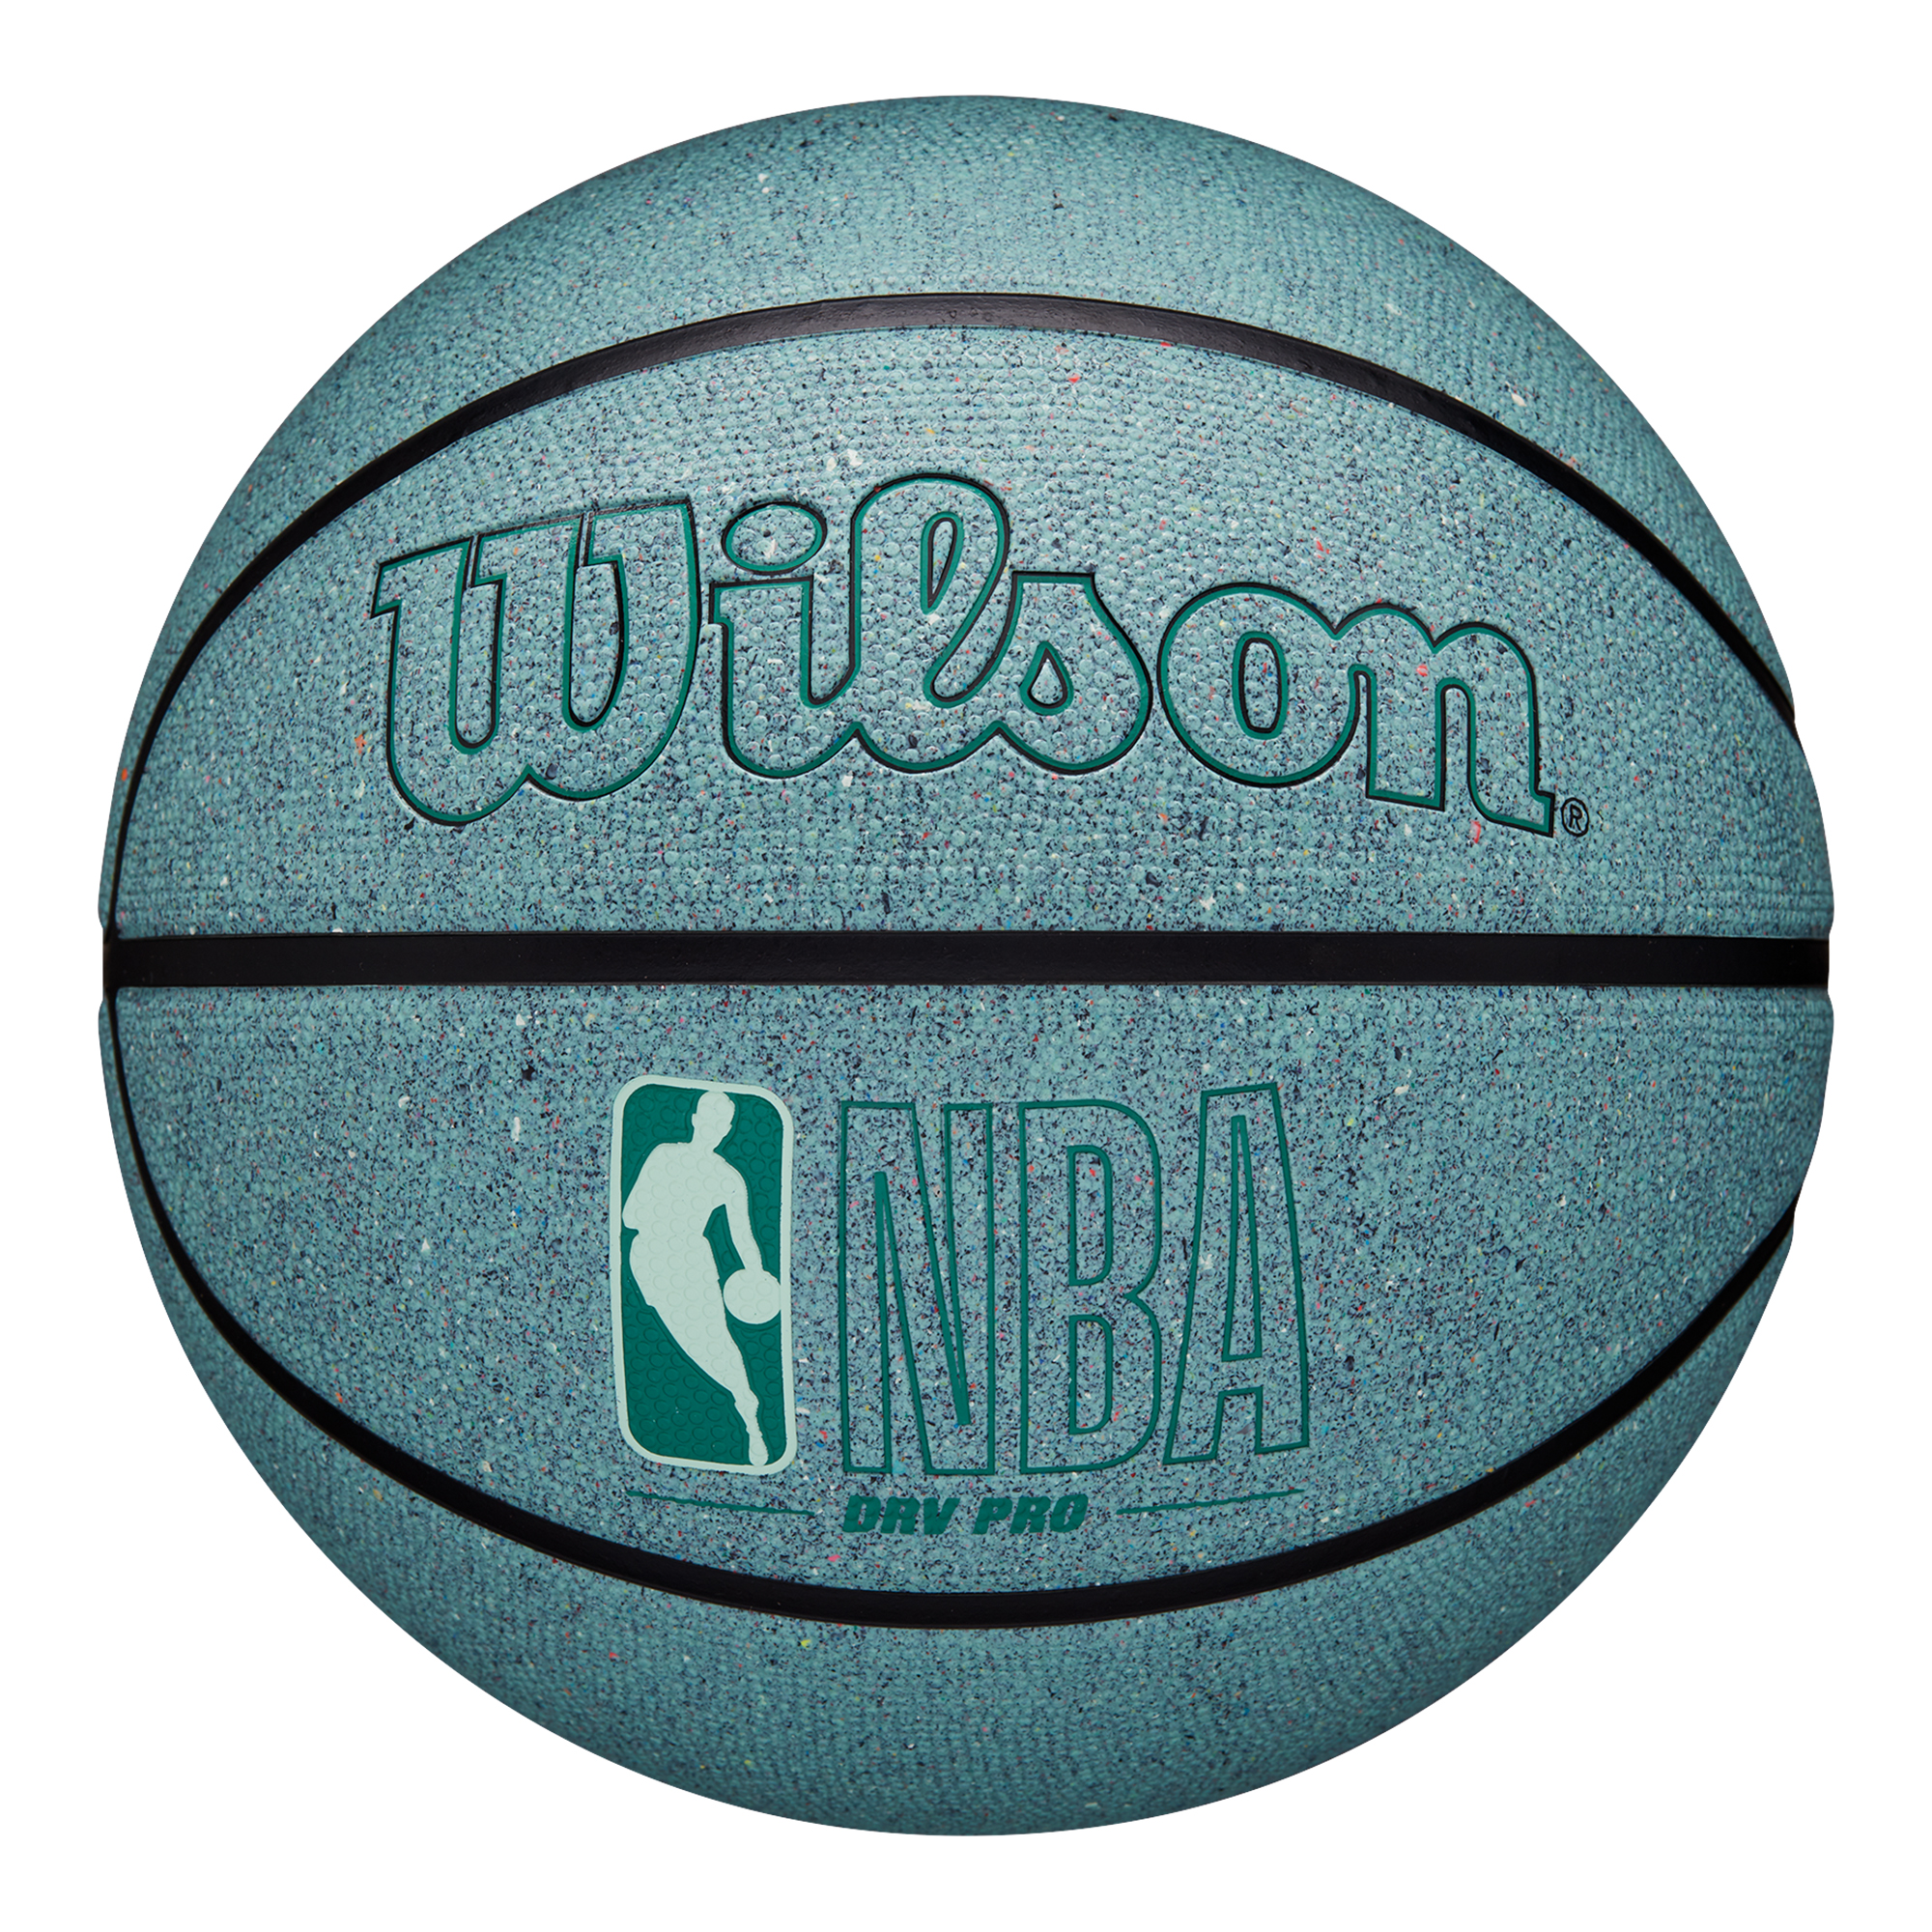 Wilson NBA DRV Pro Eco Basketball